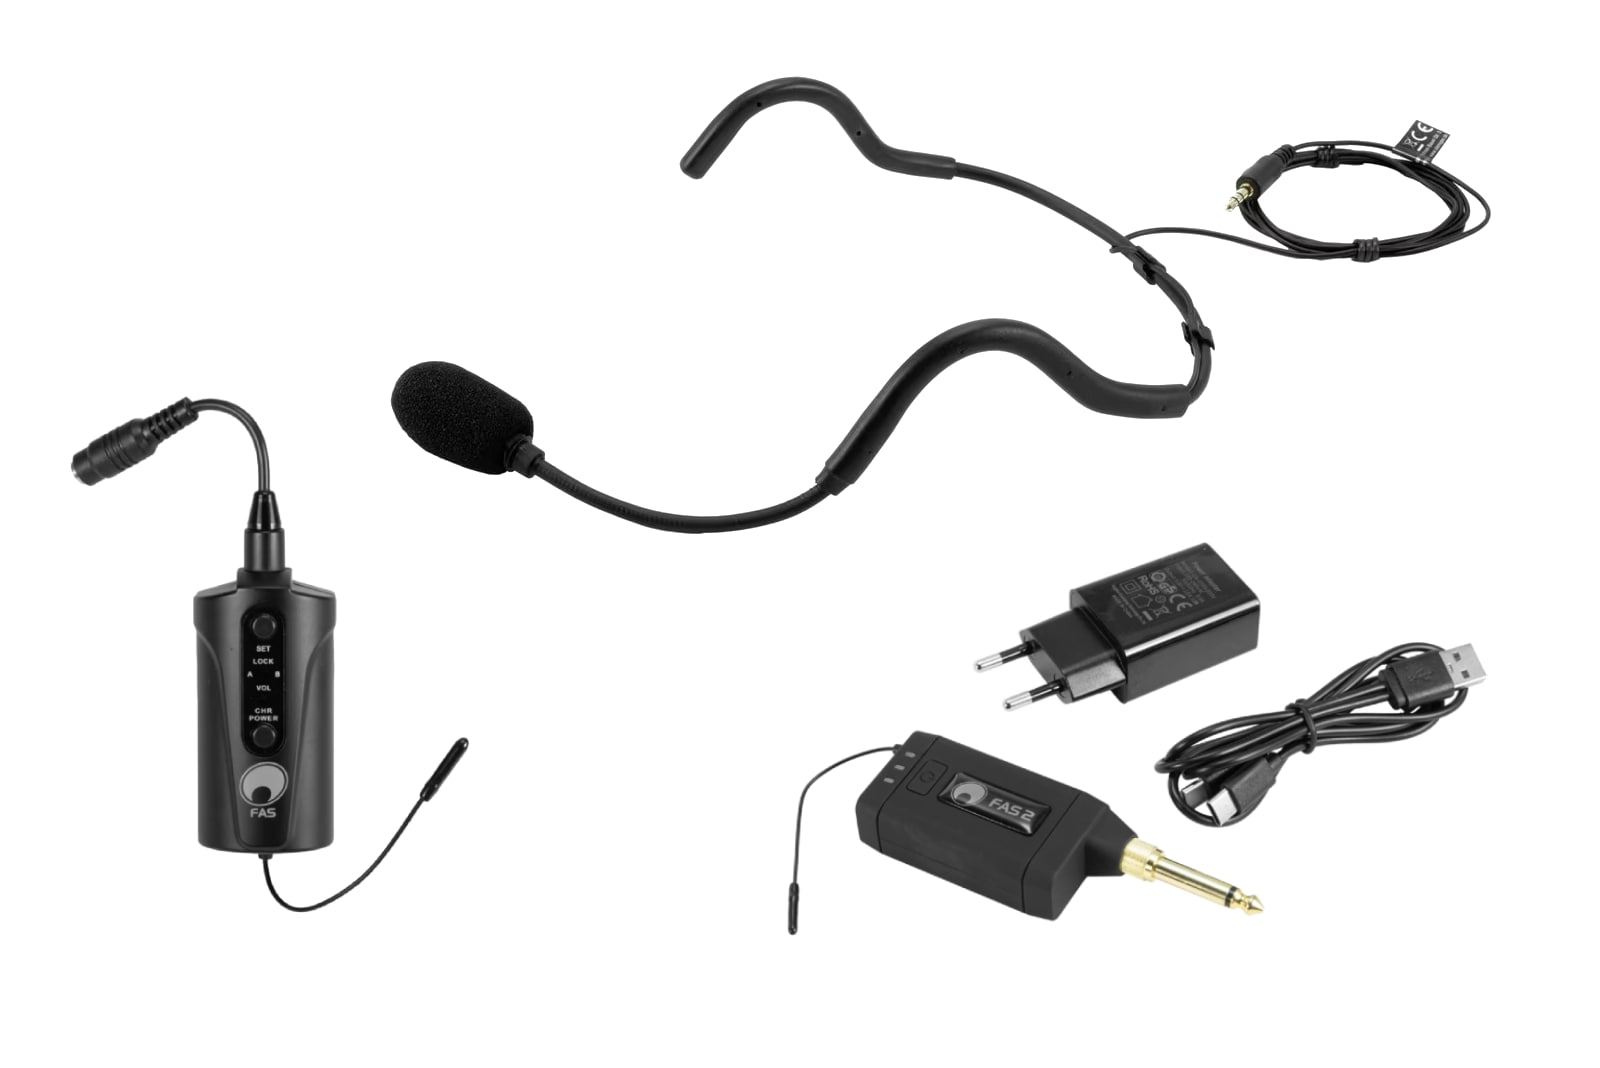 OMNITRONIC FAS Headset system med bodypak & mottagare